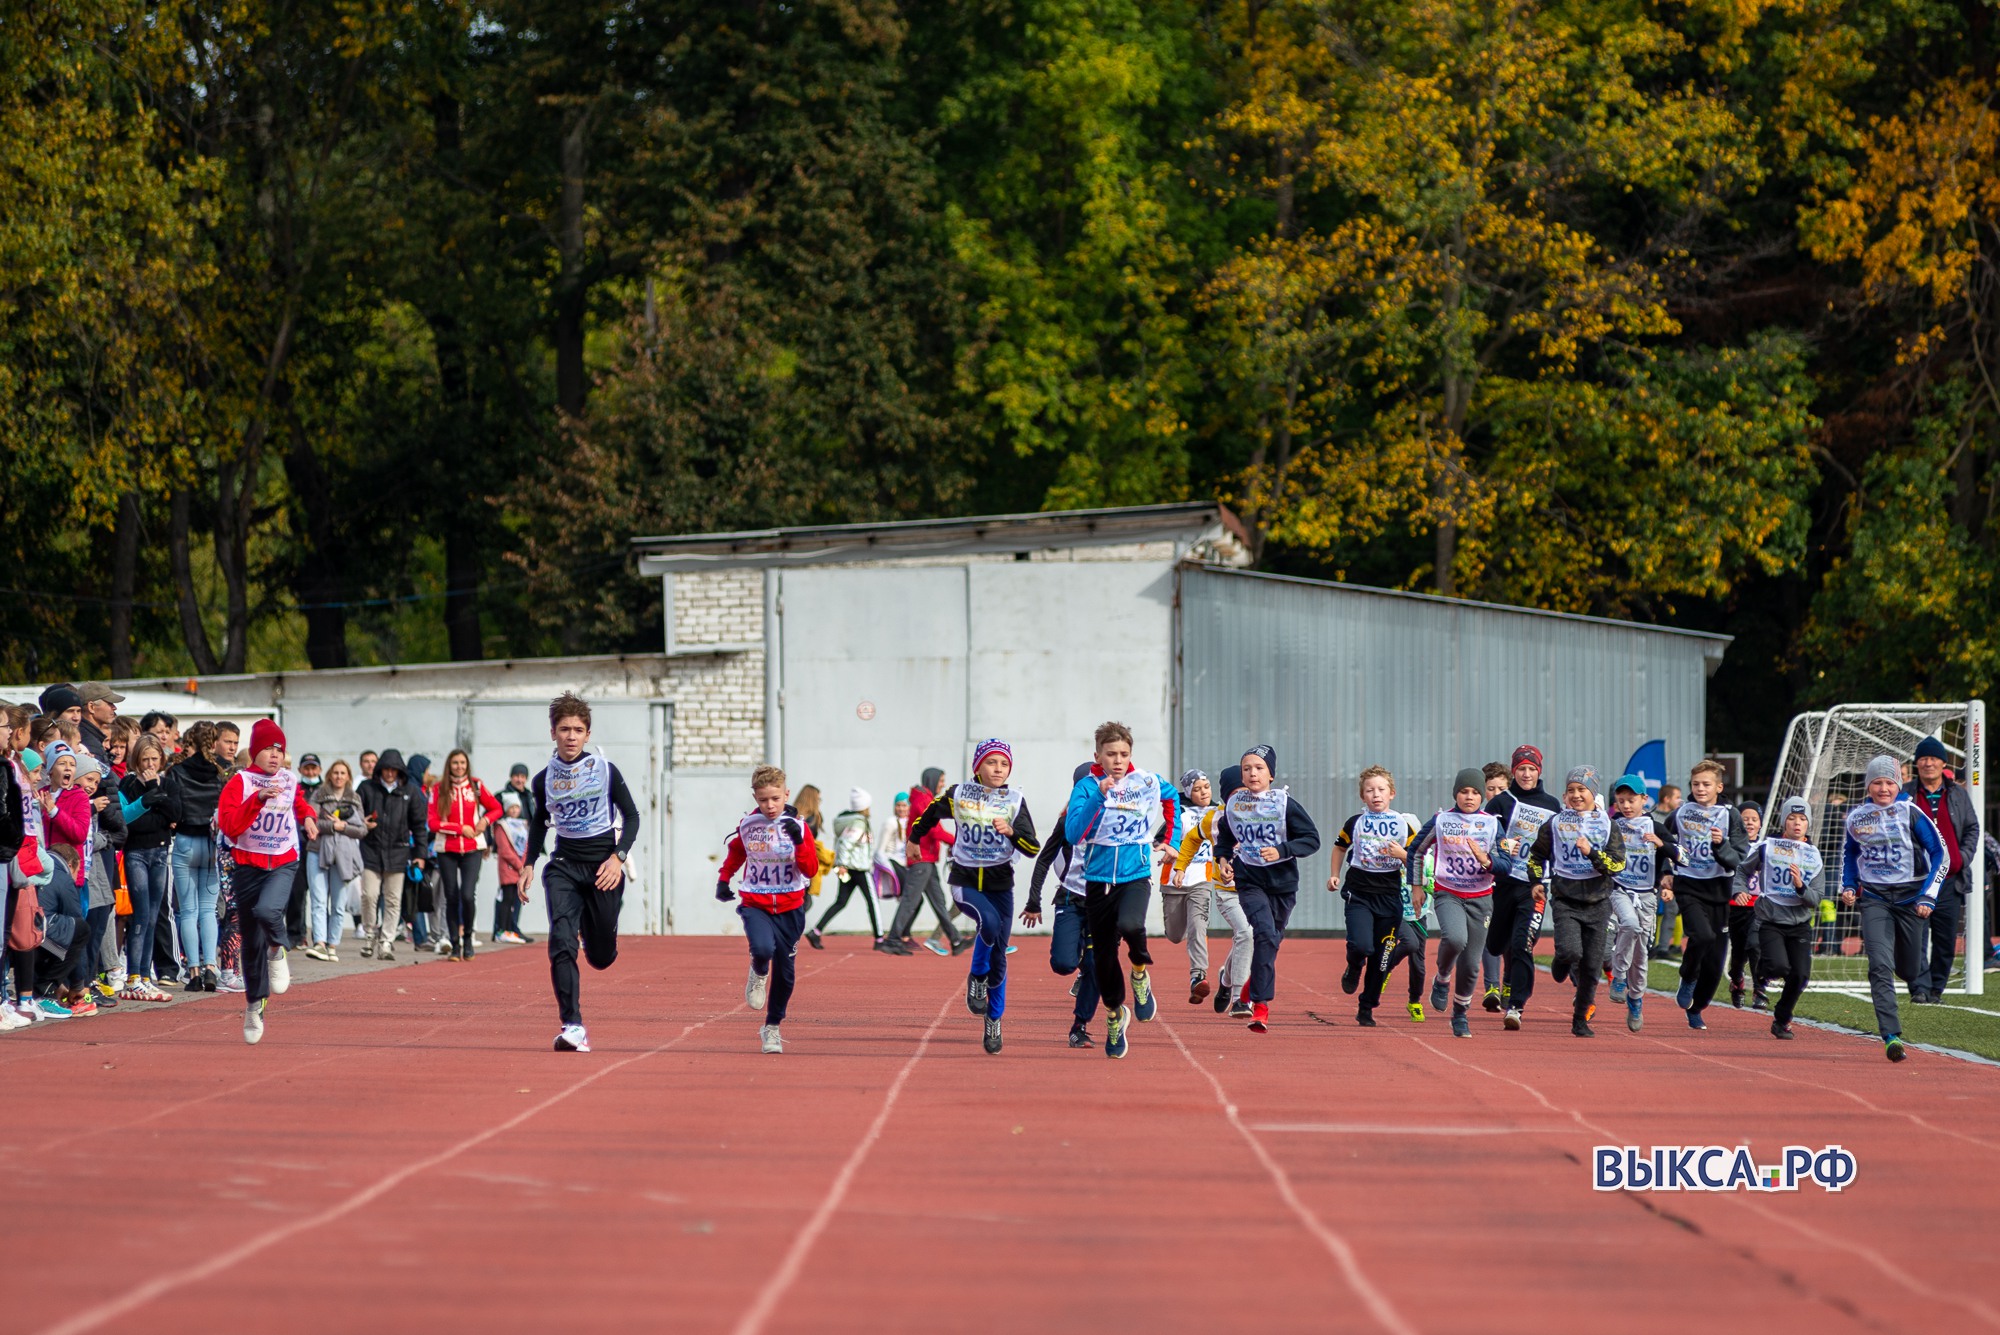 ДЮСШ «Спартак» пригласила любителей баскетбола, гимнастики, лёгкой атлетики и рукопашного боя